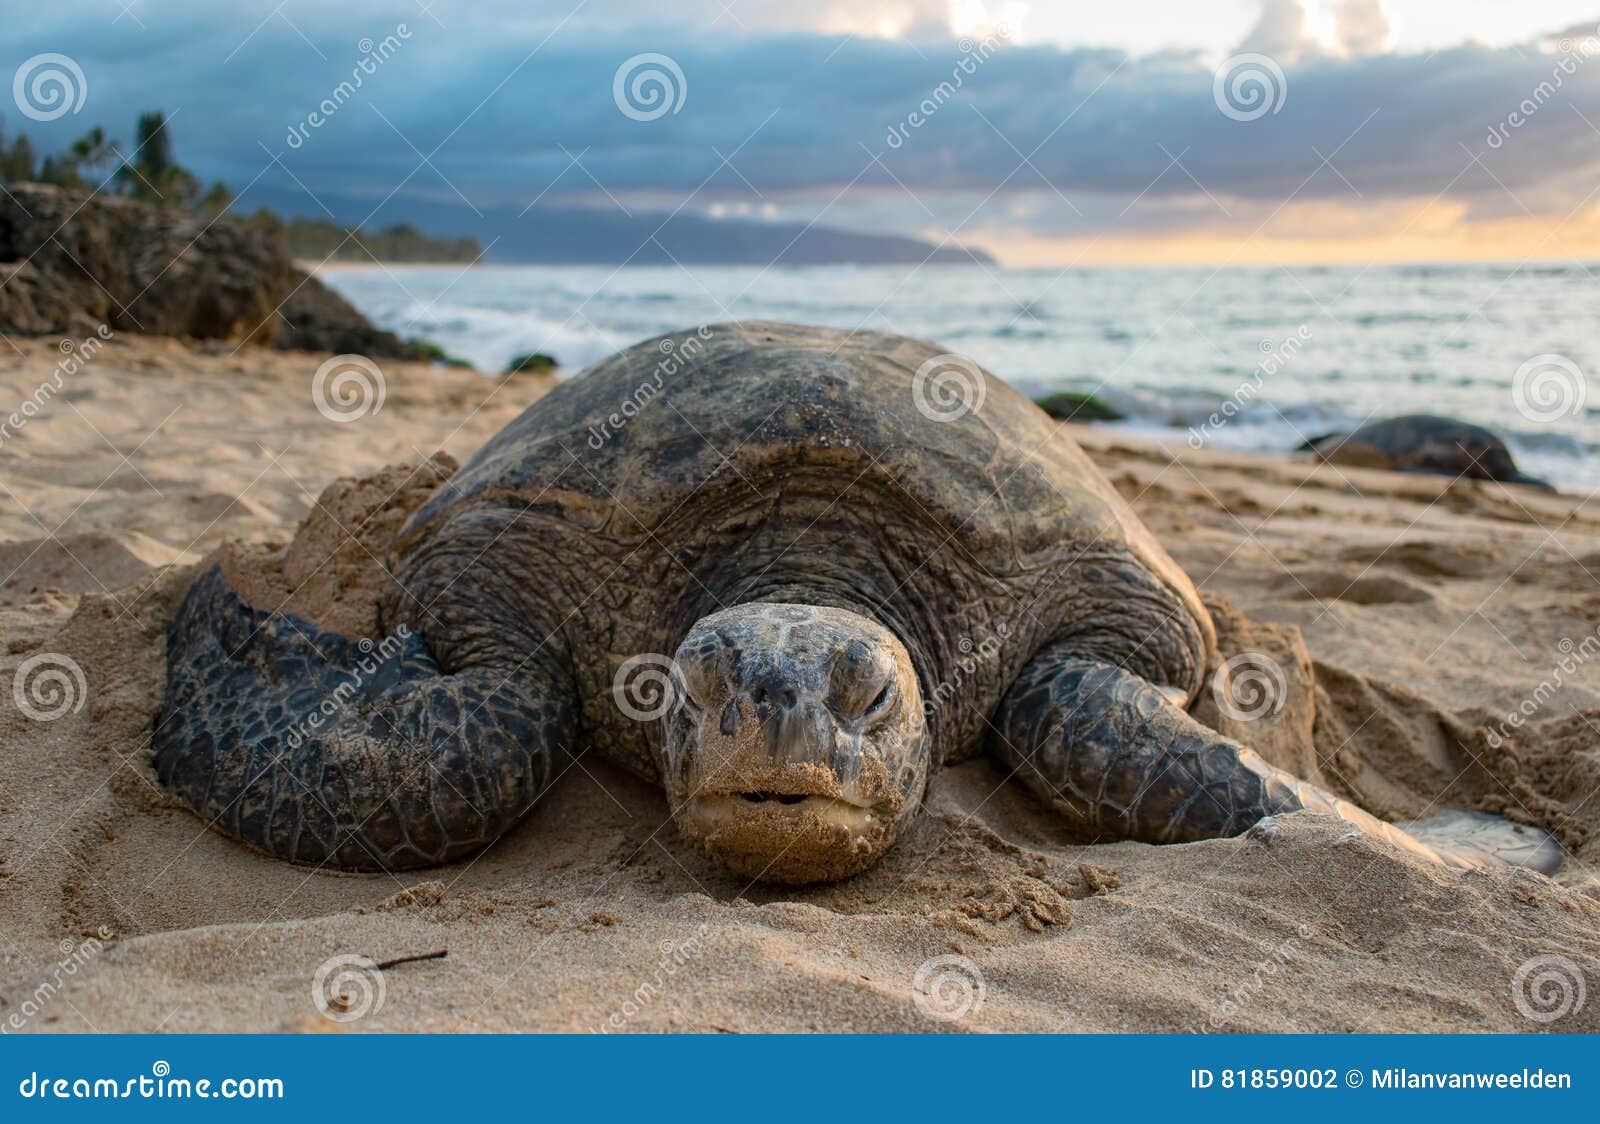 a turtle on turtle beach - oahu